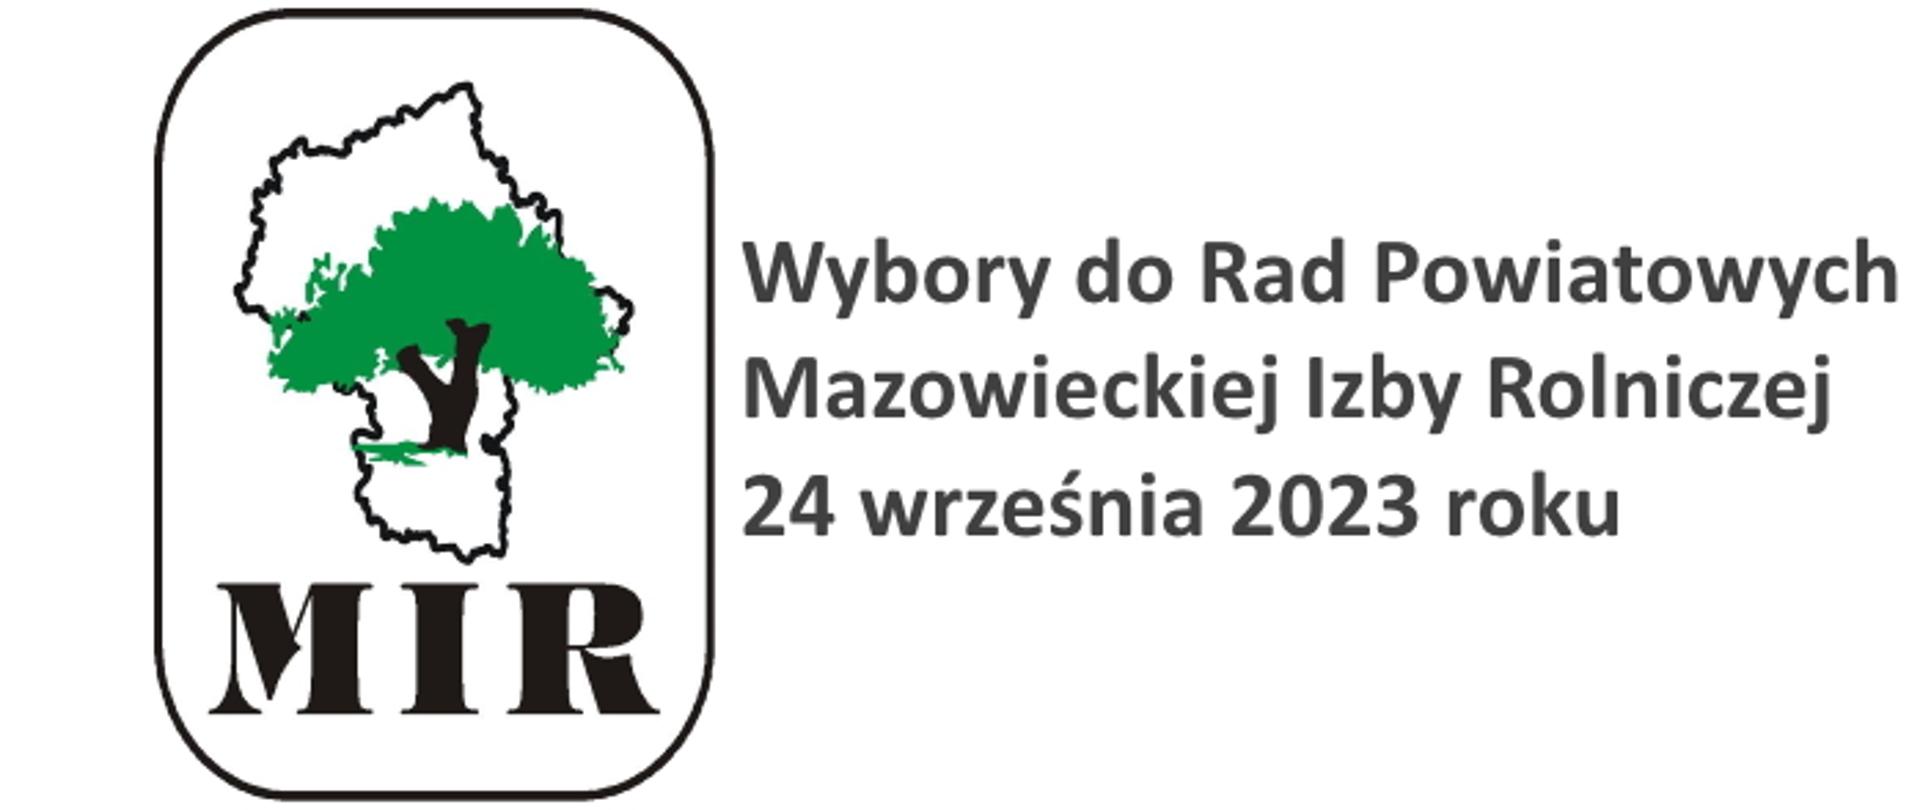 Rysunek drzewa na tle konturów województwa Mazowieckiego z podpisem MIR. Wybory do Rad Powiatowych Mazowieckiej Izby Rolniczej 24 września 2023 roku